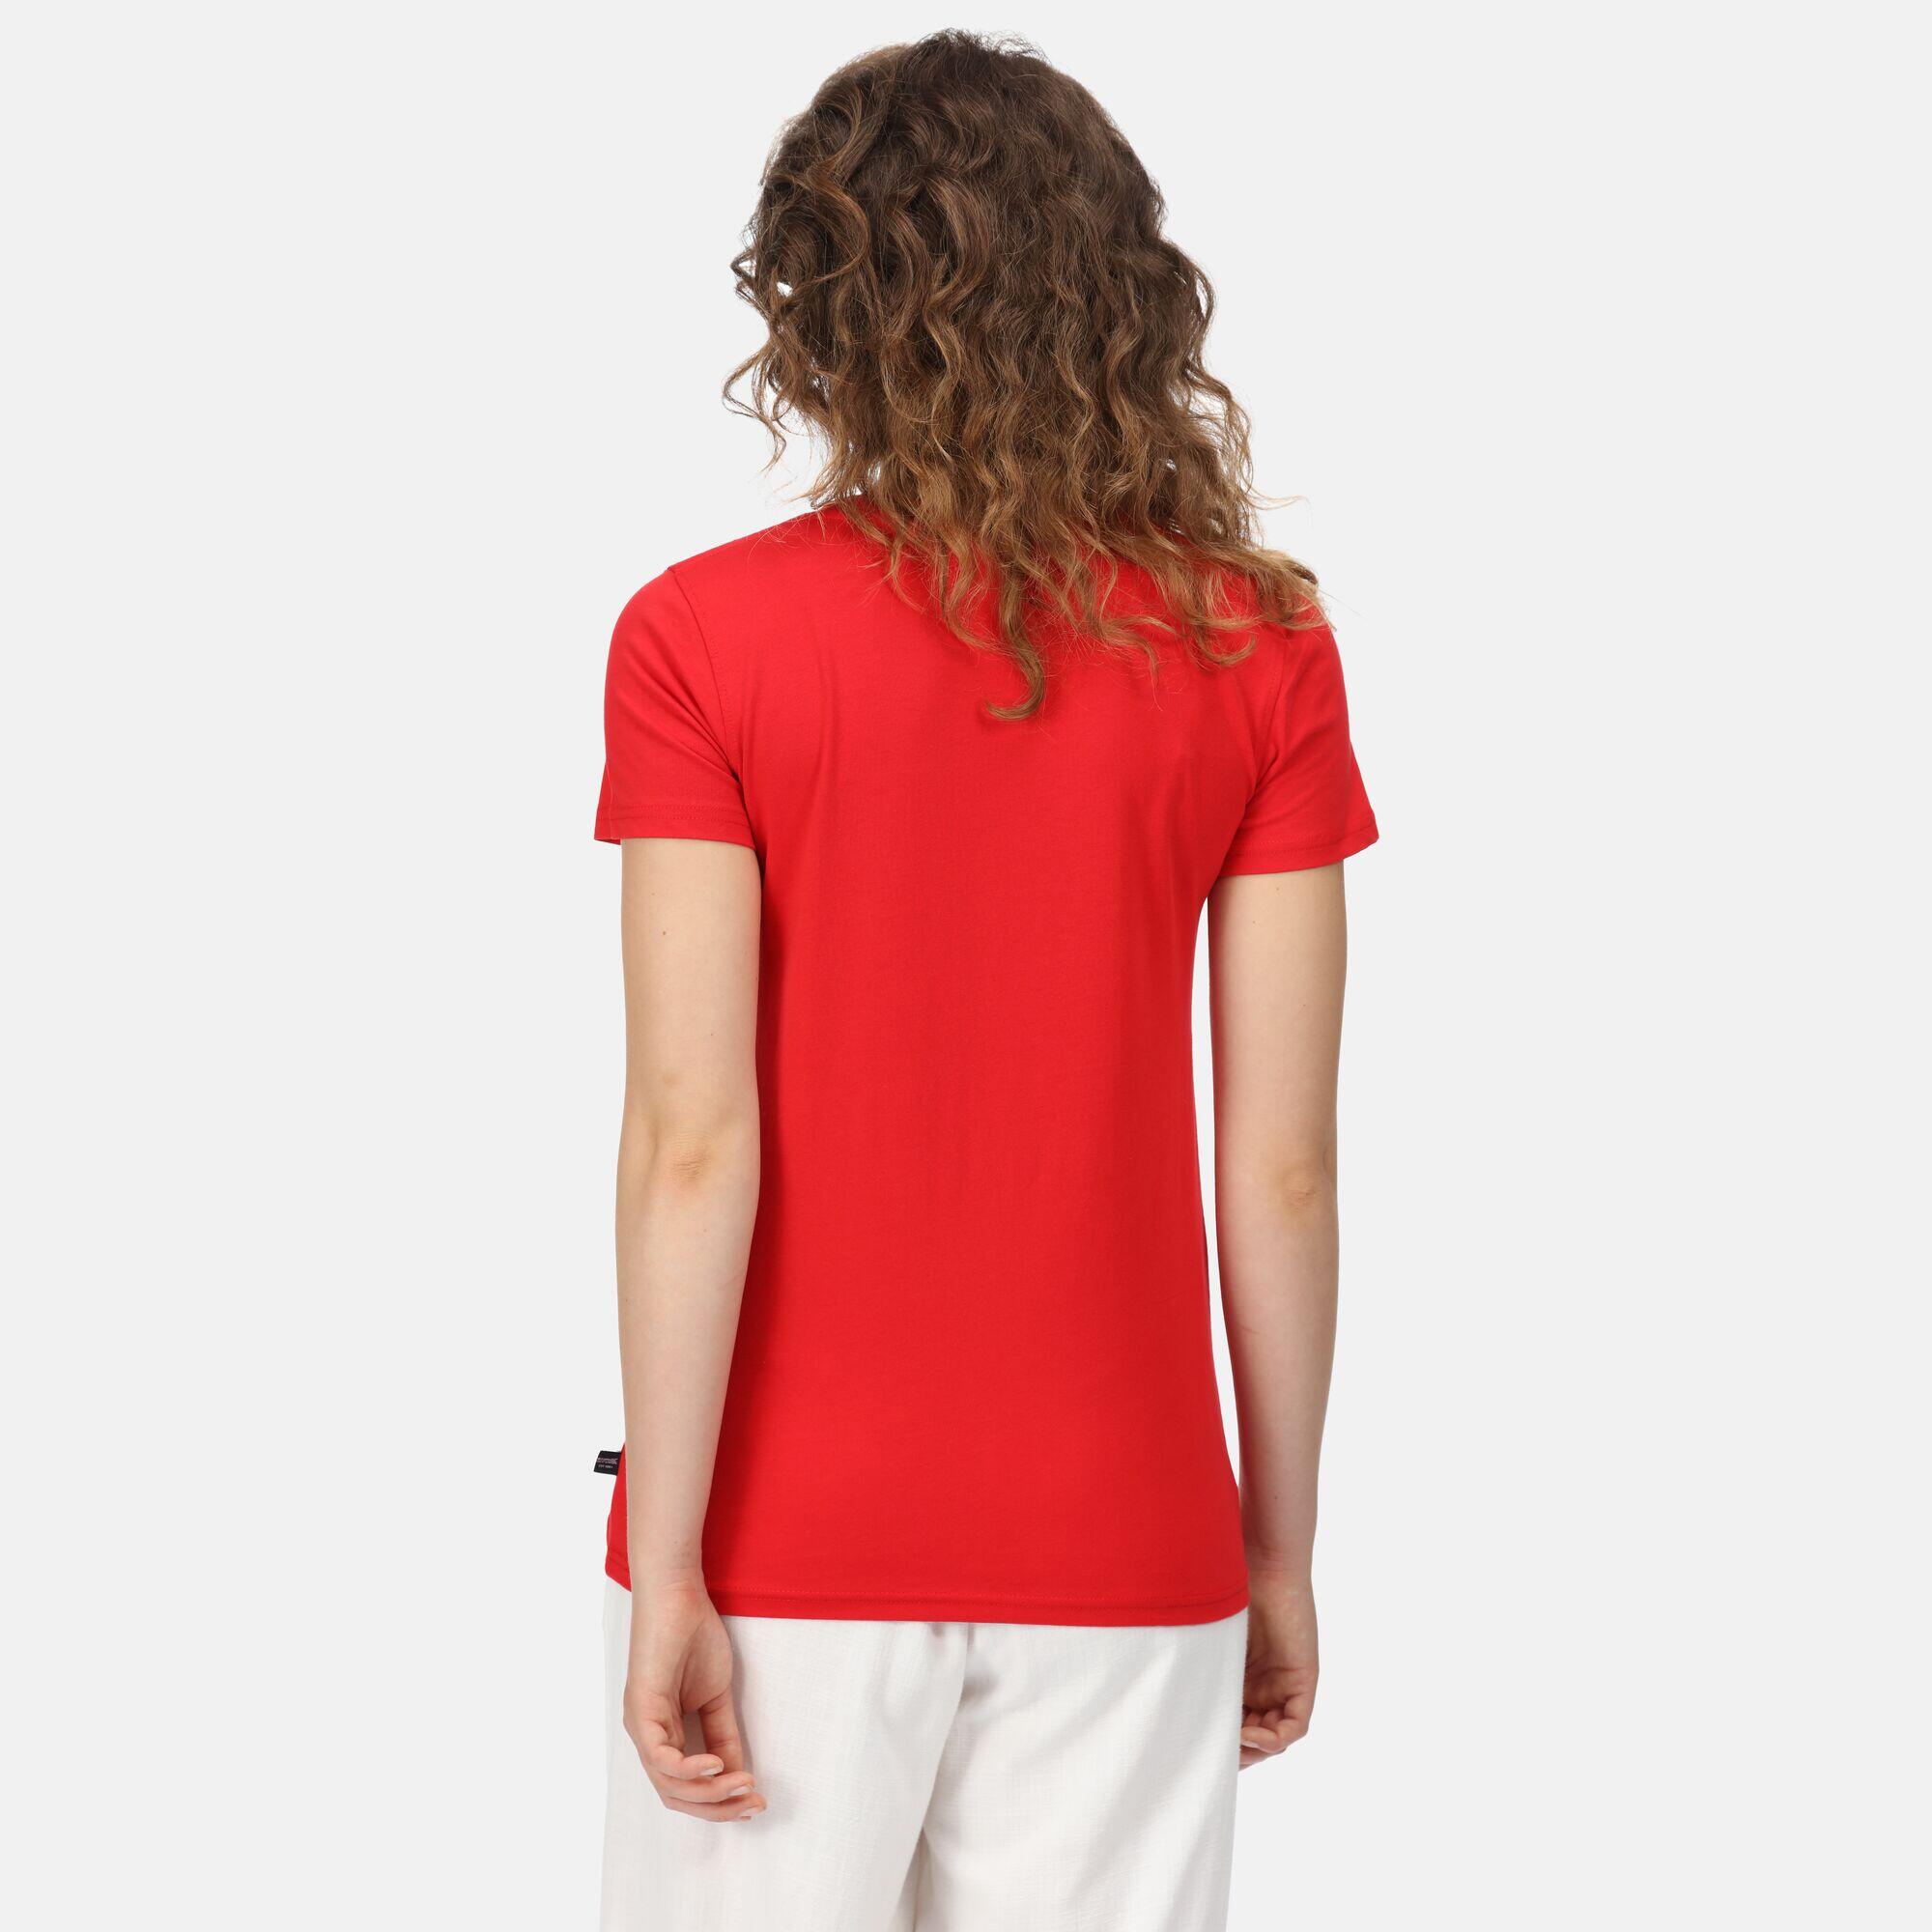 Filandra VI Women's Walking Short Sleeve T-Shirt - True Red 2/5